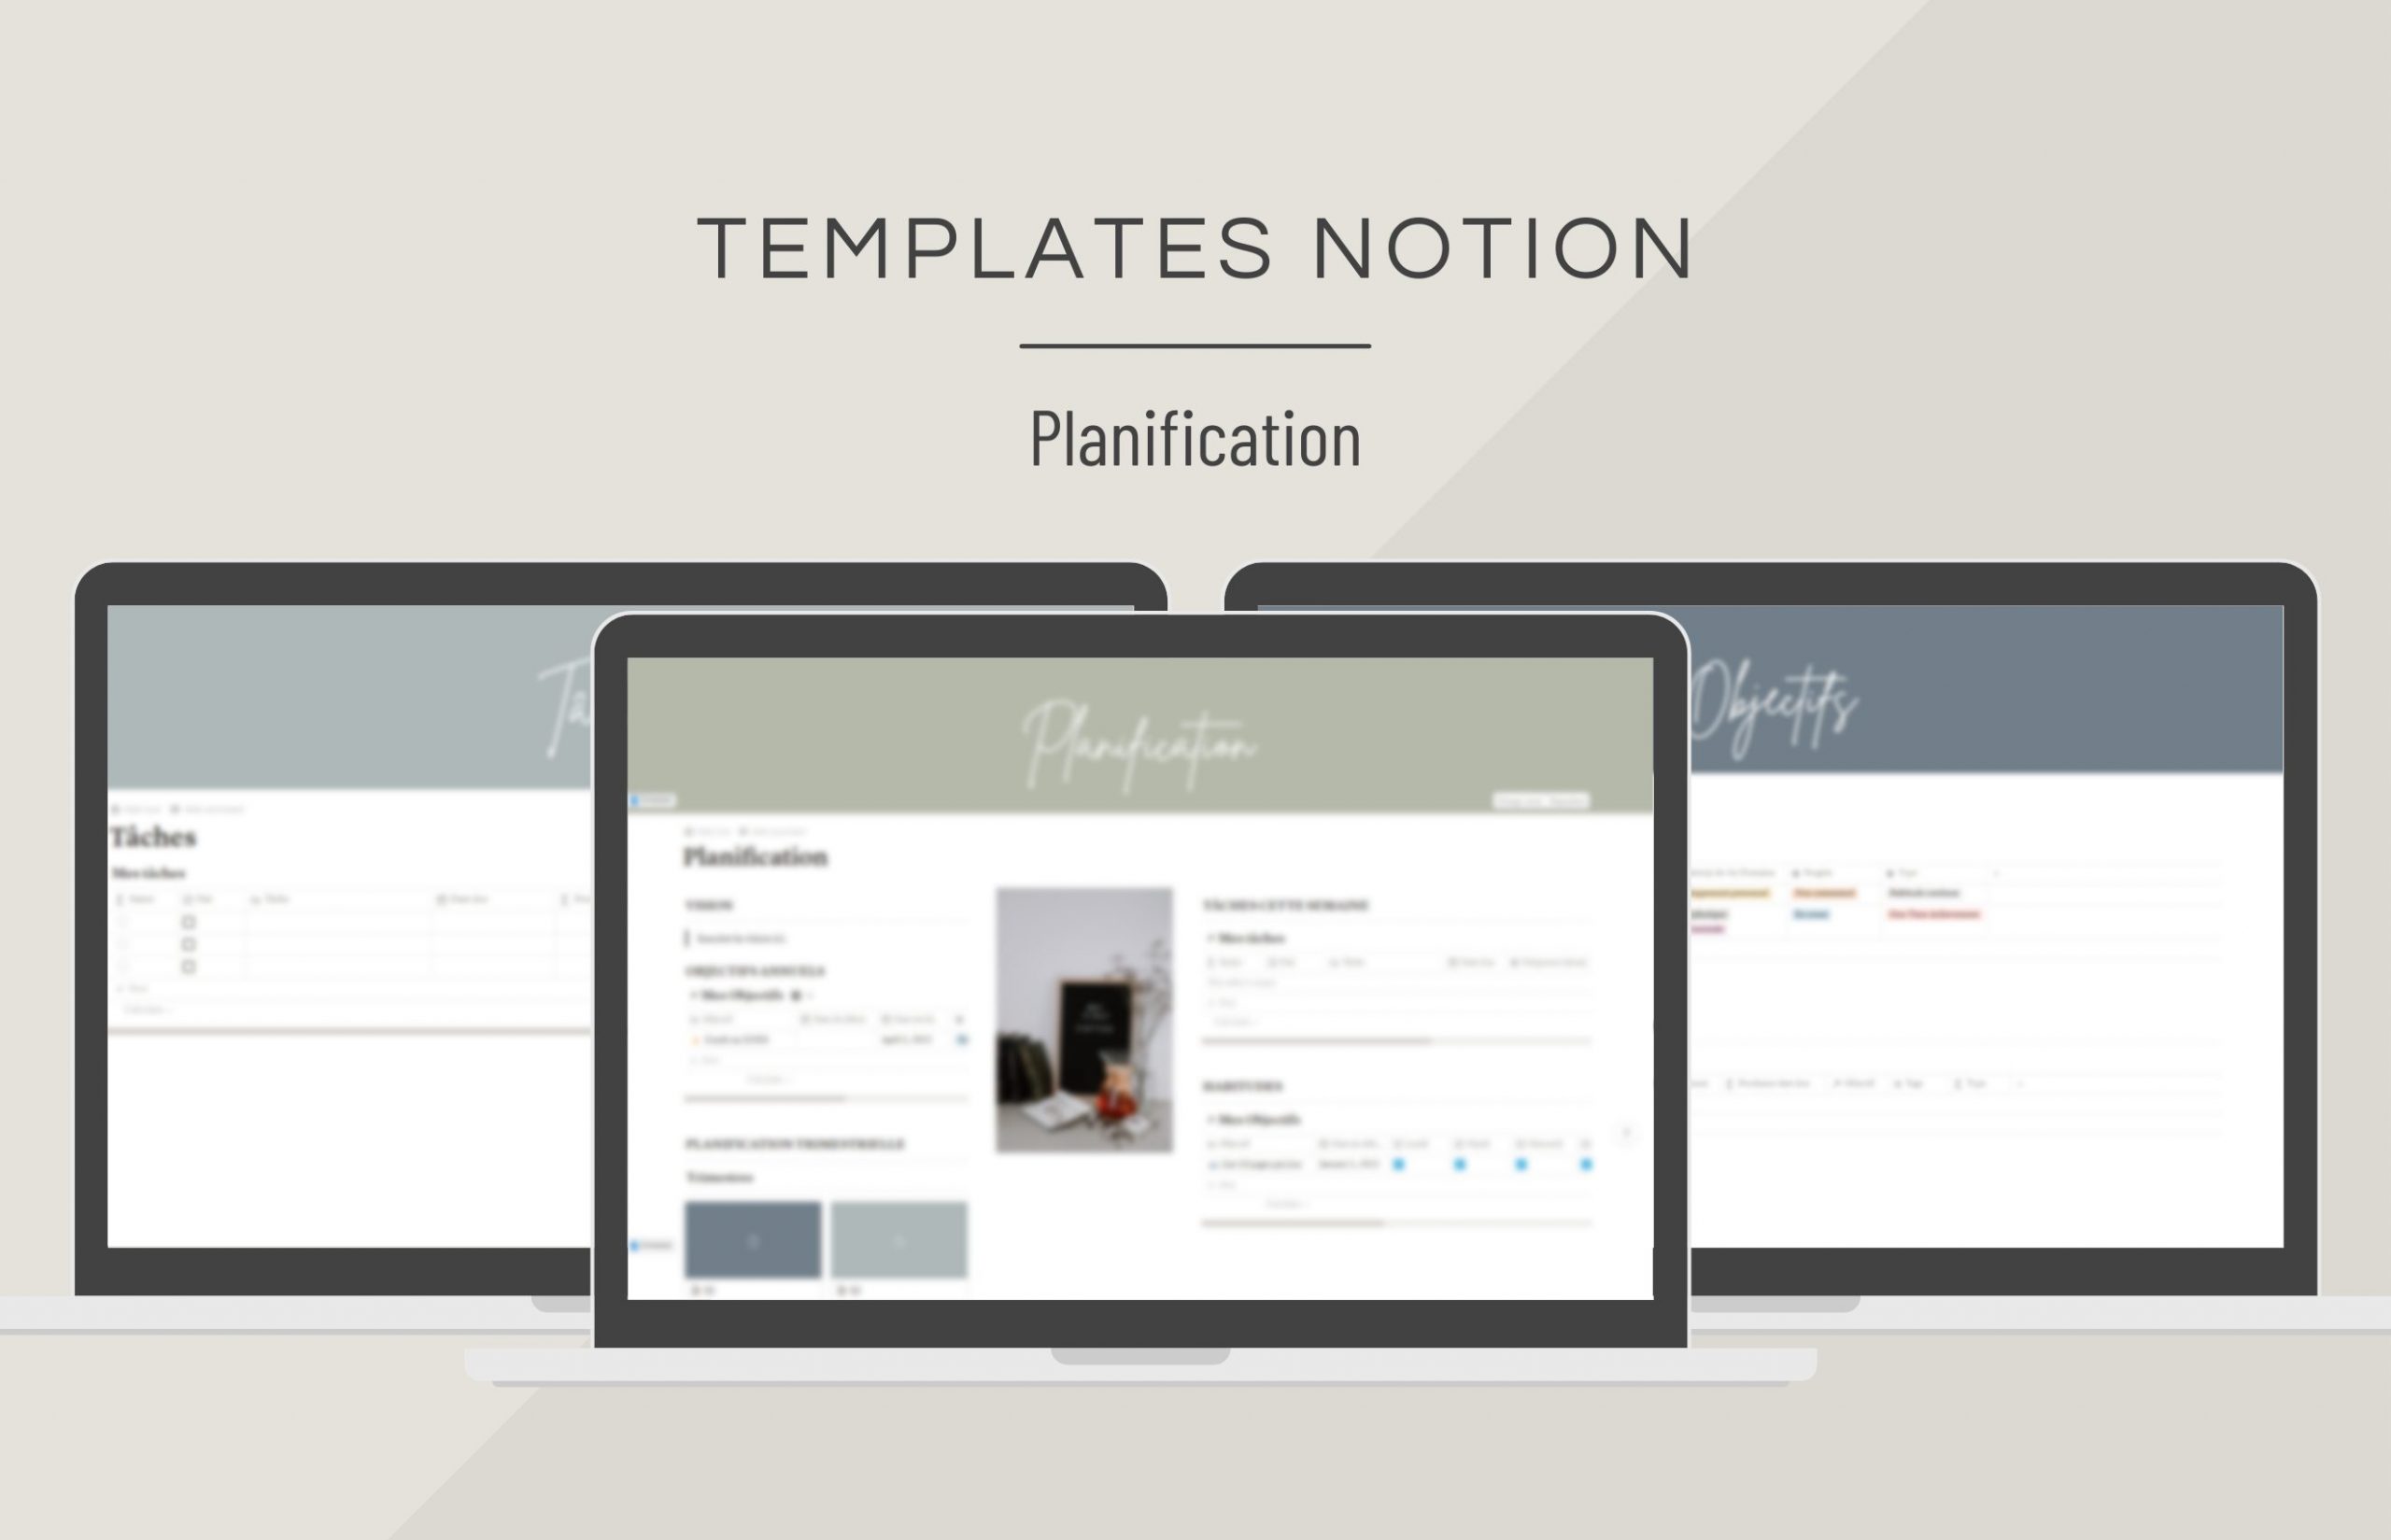 template_notion_bundle_planification